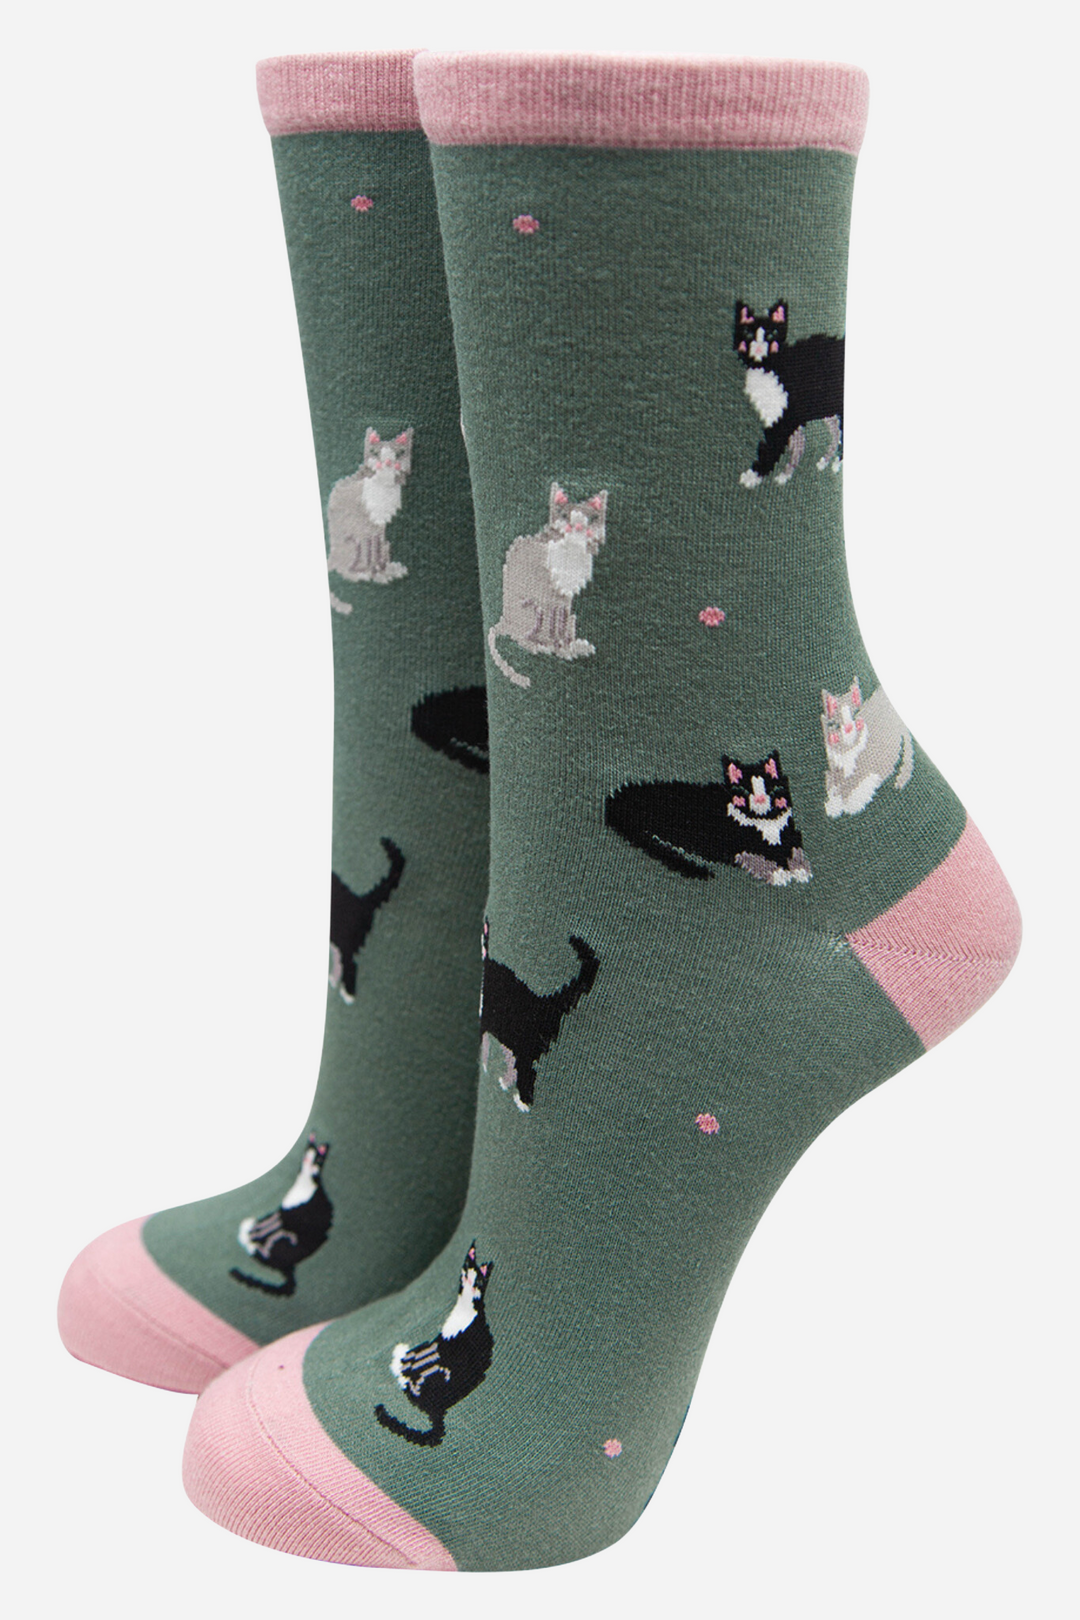 Women's Bamboo Socks Black Cat Ankle Socks Cat Print Novelty Sock Green